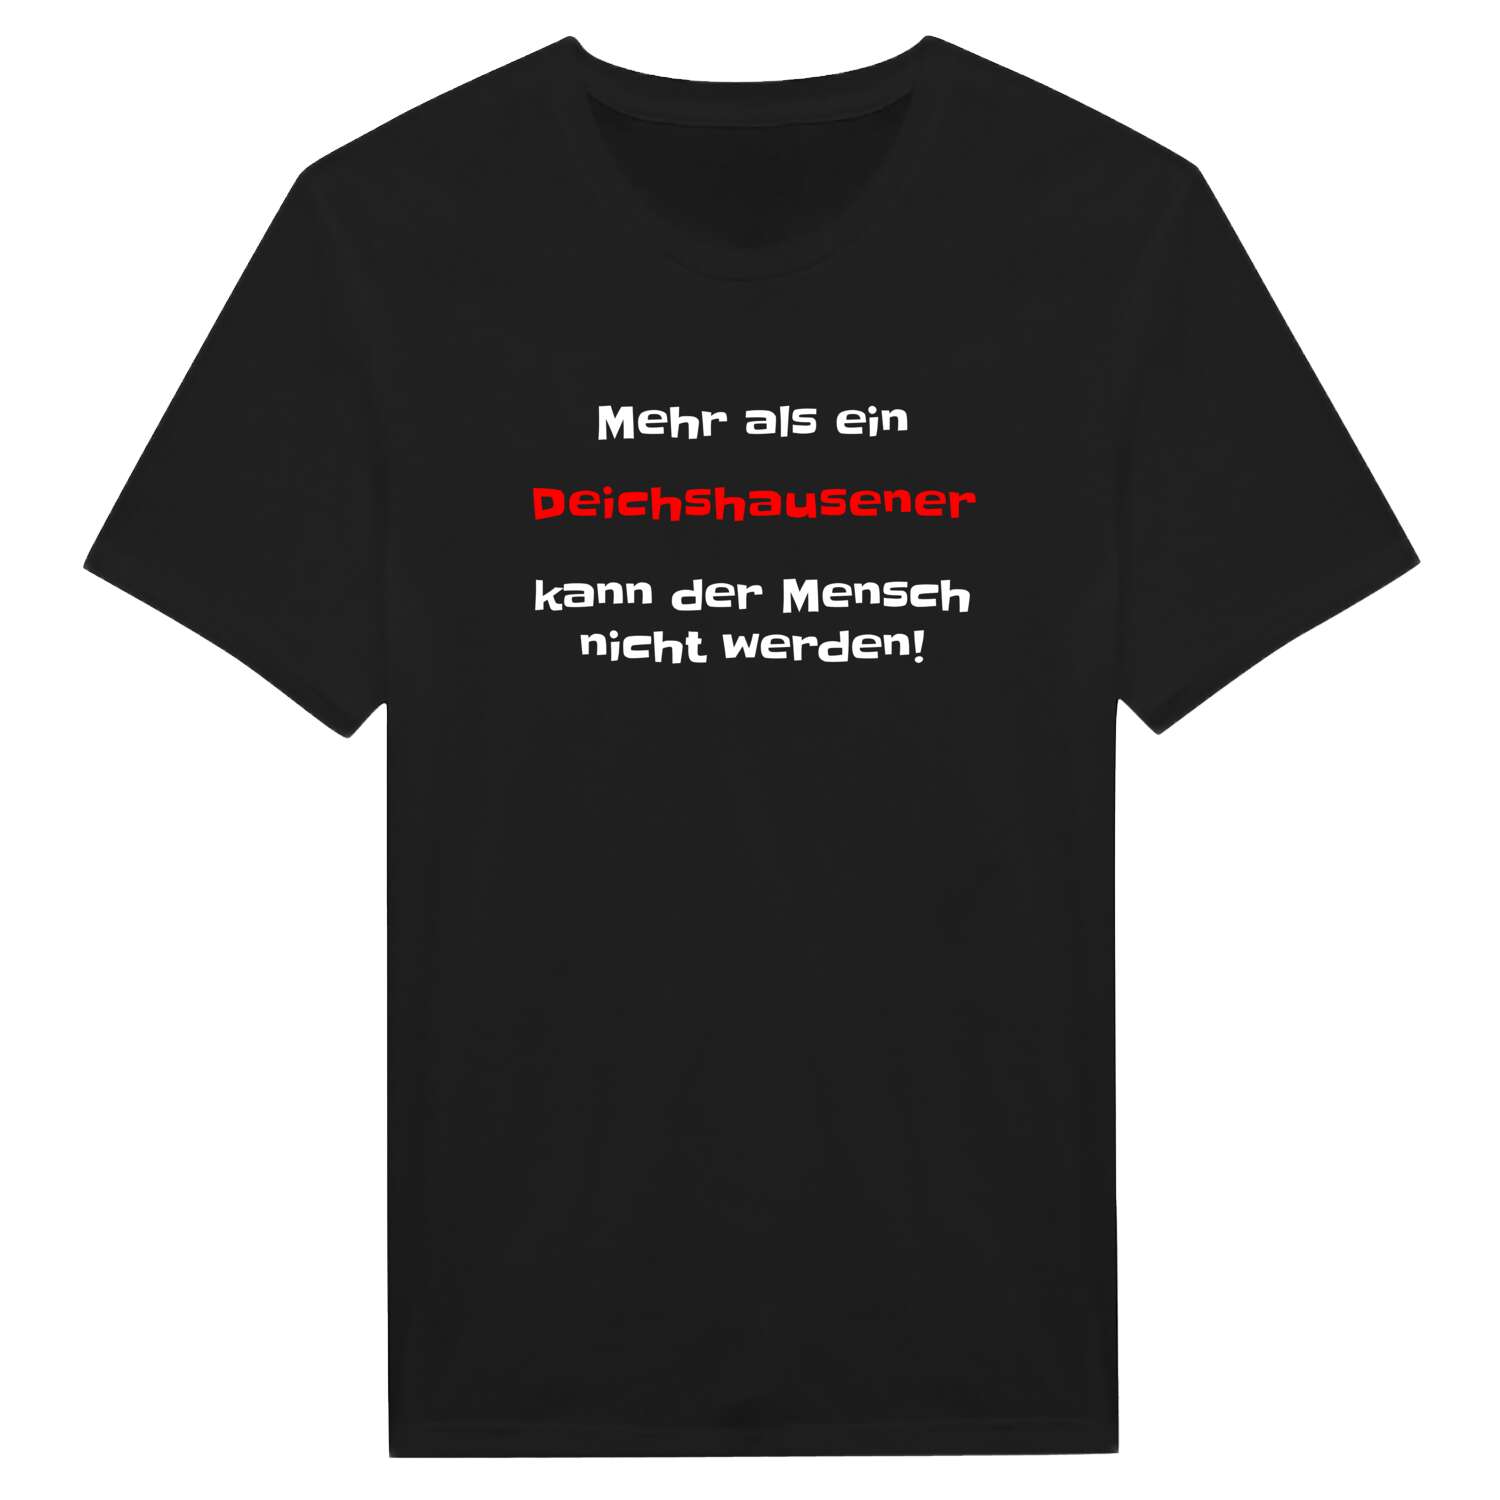 Deichshausen T-Shirt »Mehr als ein«